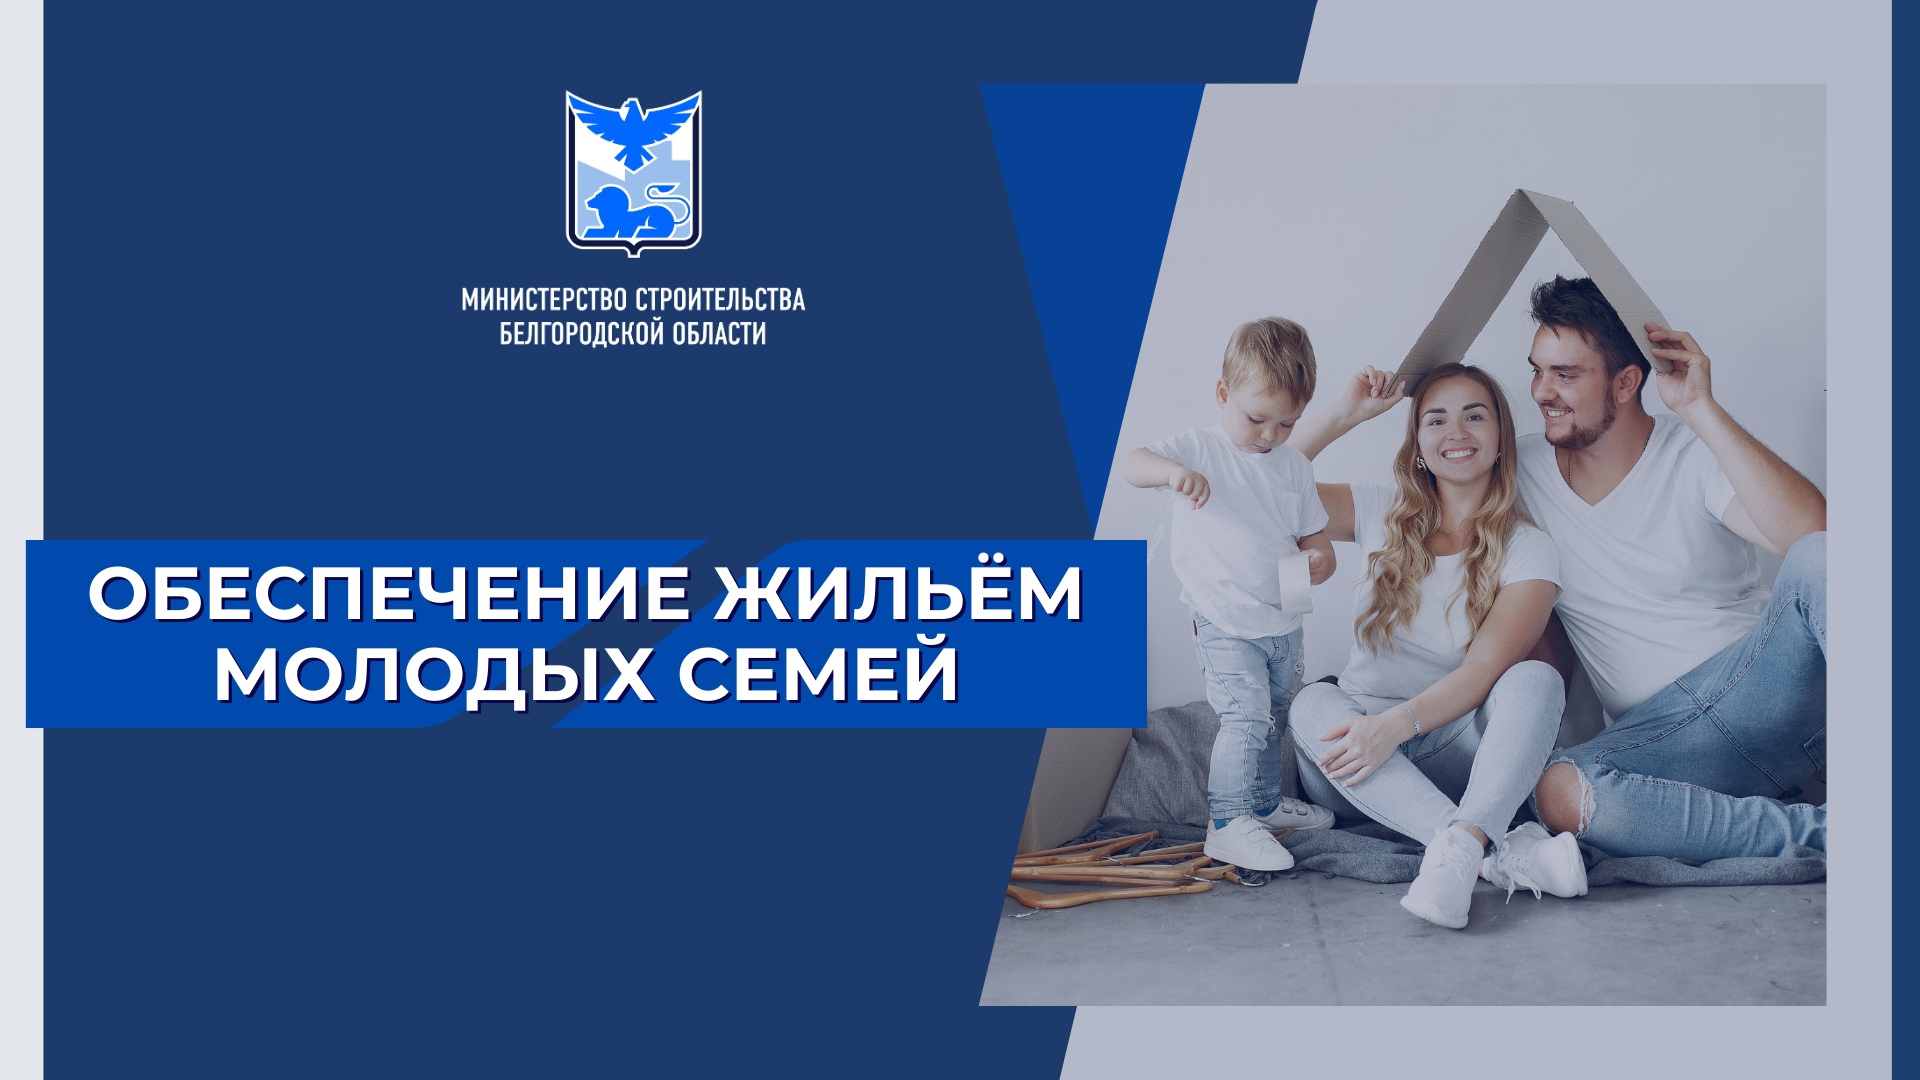 На территории Белгородской области действует программа по предоставлению молодым семьям социальных выплат на приобретение, либо строительство жилья.